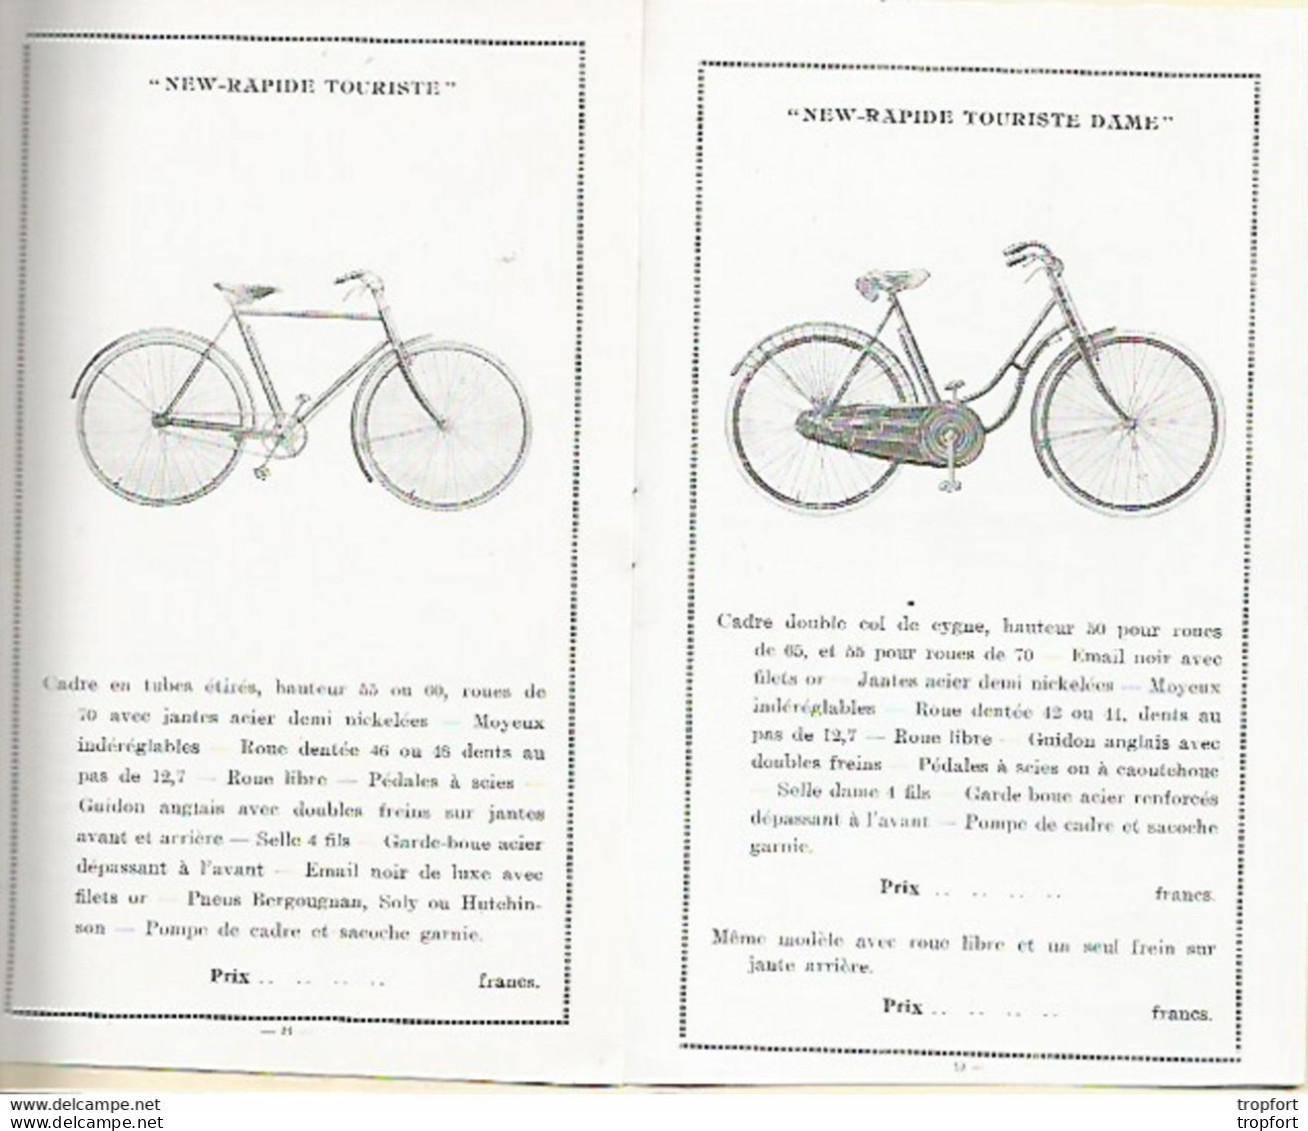 GG / Livret Tarif Catalogue CYCLE BETTINA TOURS avec ses deux plaques identité acier Velo bicyclette cyclisme